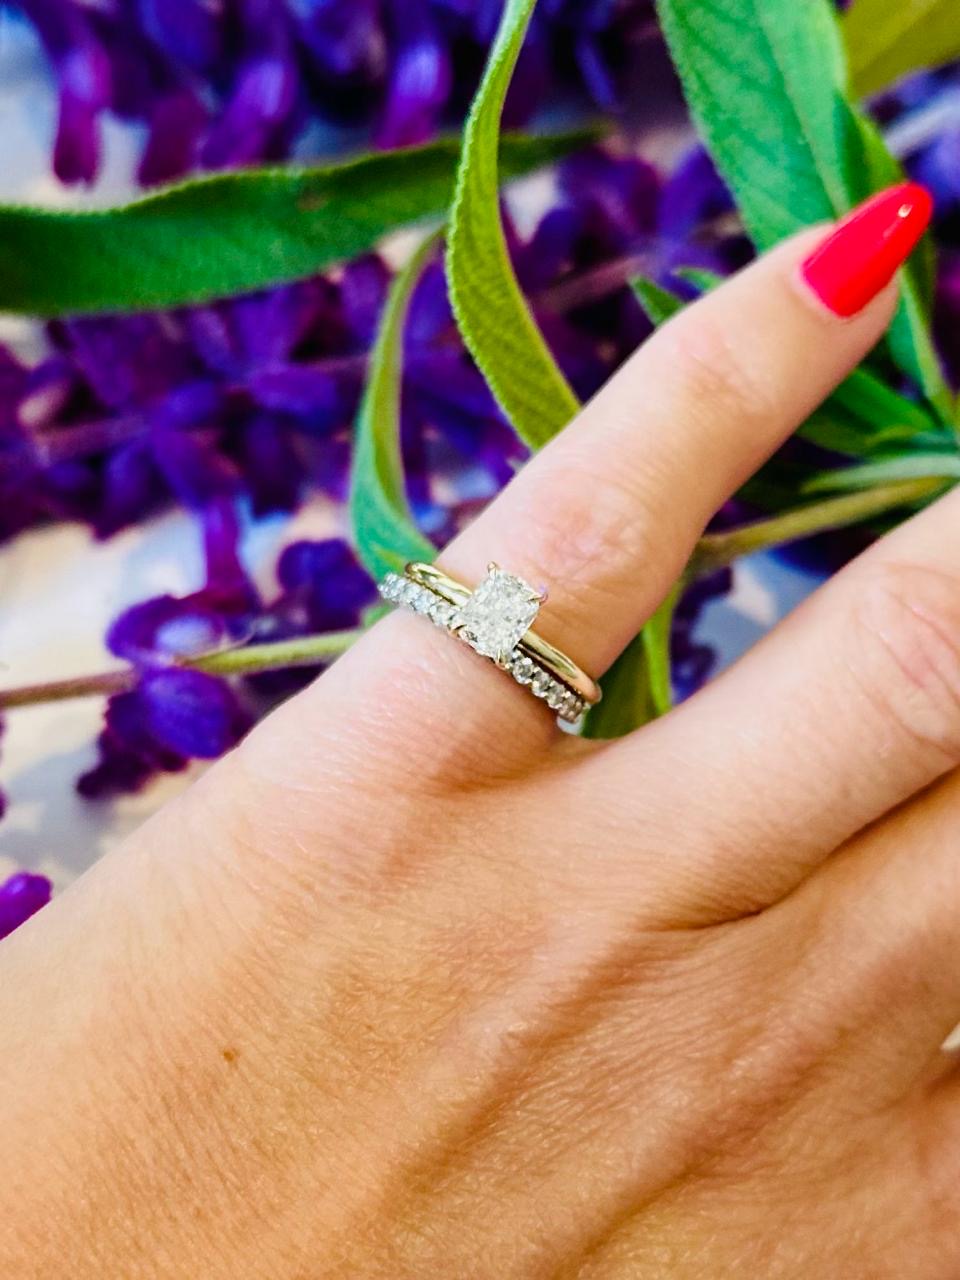 Diamond Engagement Ring wit Wedding band on Finger